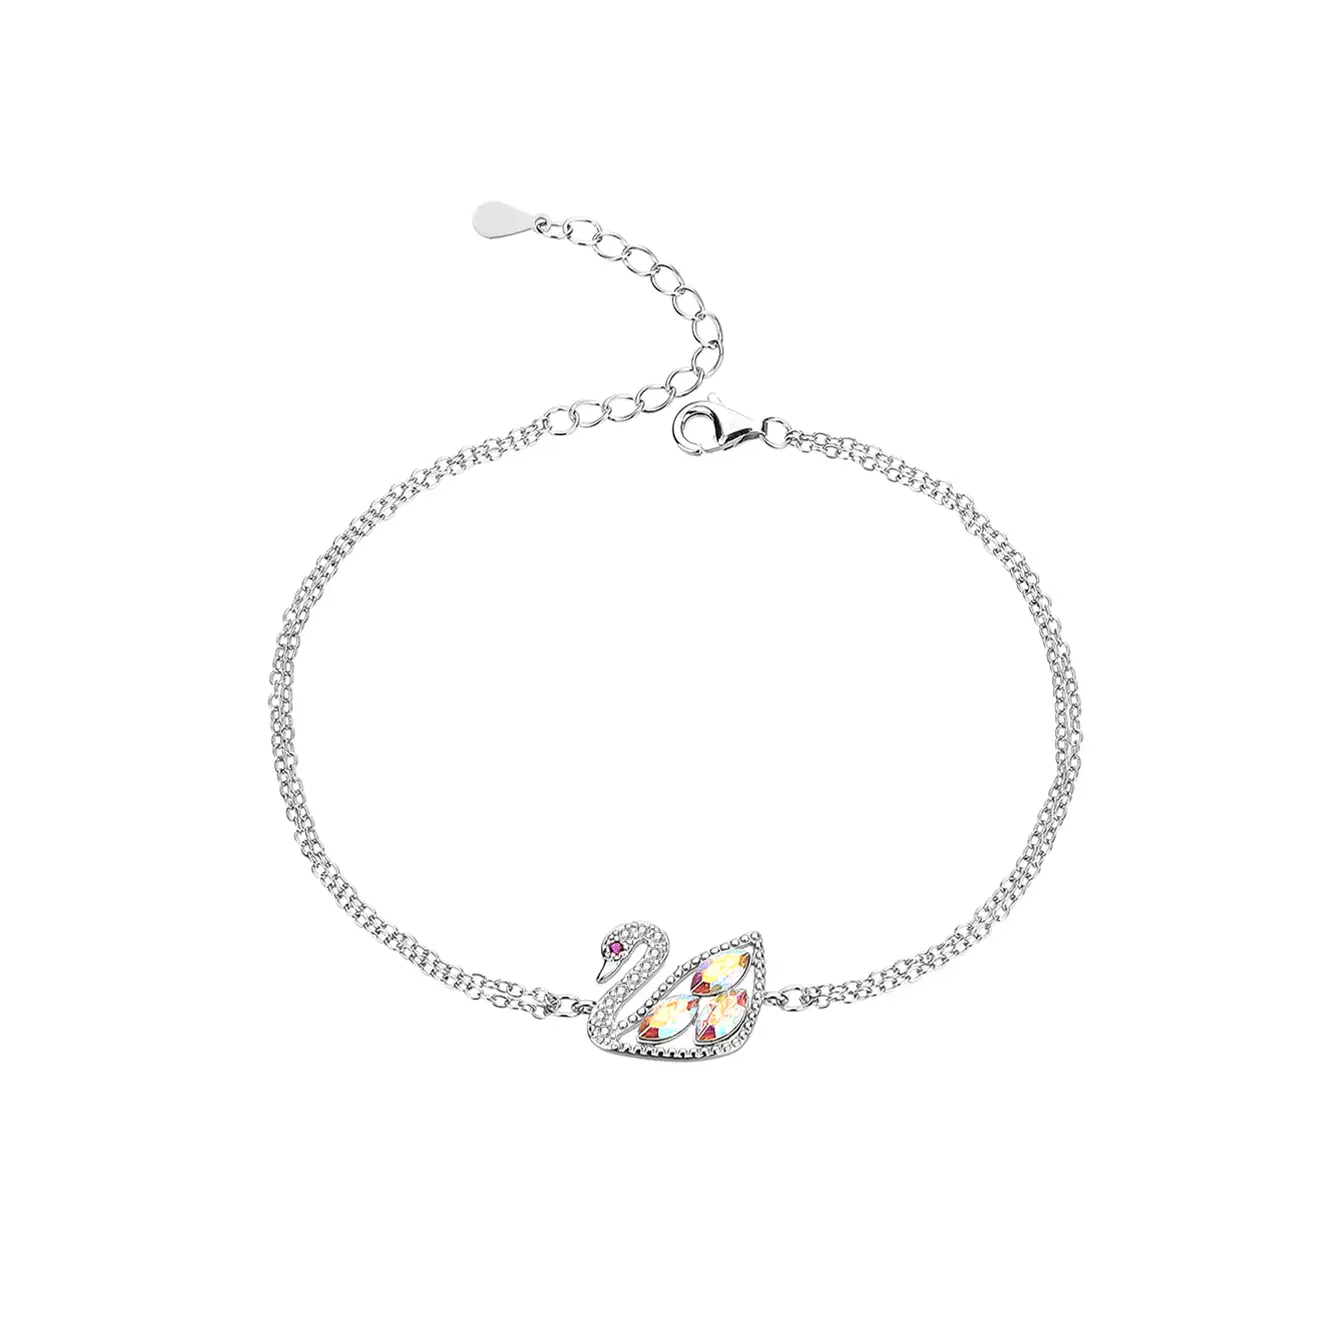 Austrian Crystals Swan Cubic Zirconia Bracelet 100100005